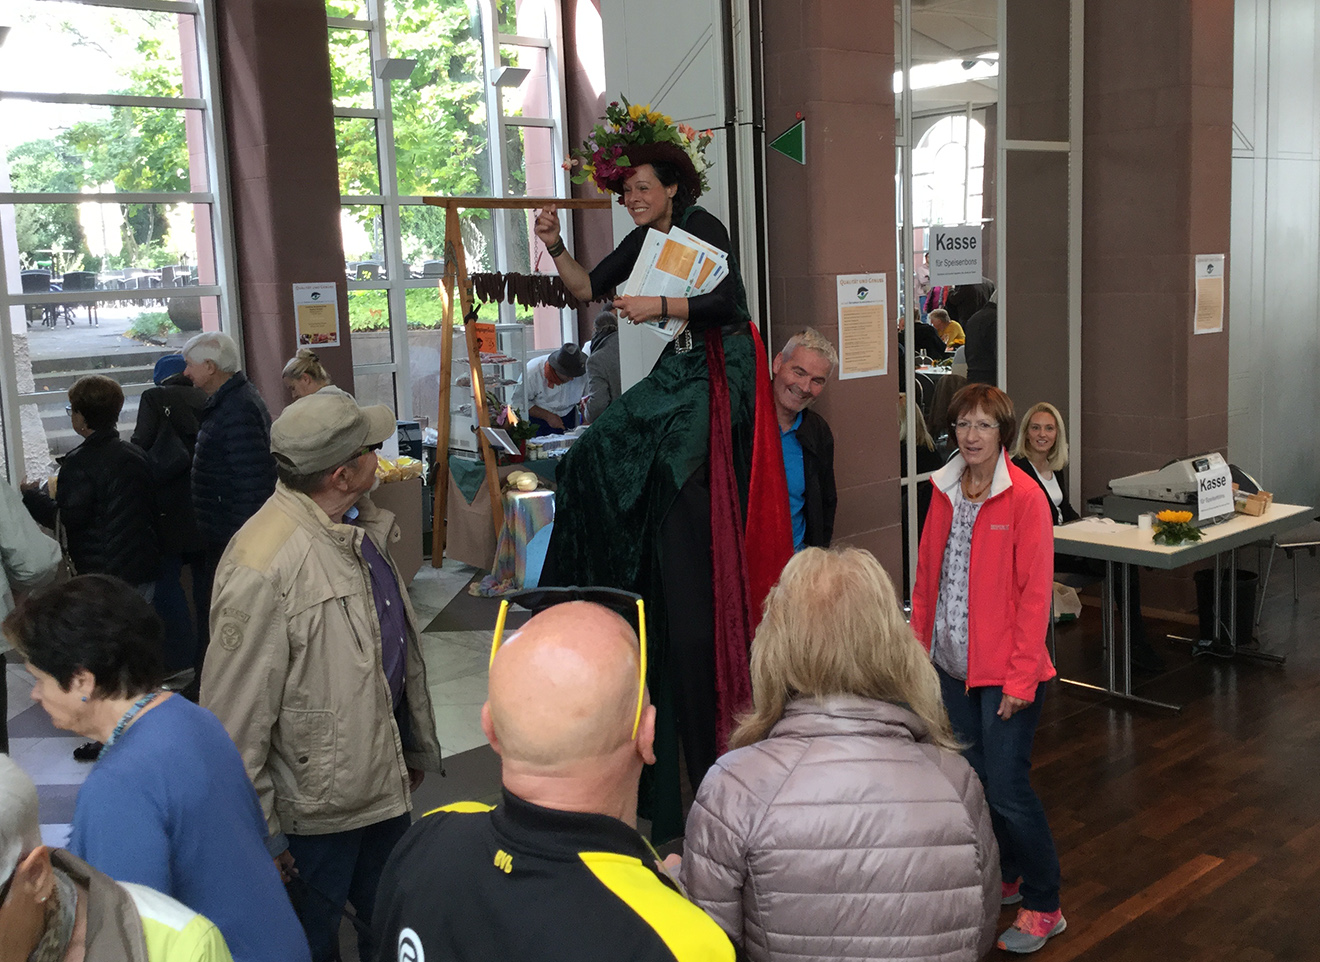 Naturpark Schwarzwald Blog, Genuss-Messe Ettlingen, Blumenfee nutzt Besucherschulter als Stuhl